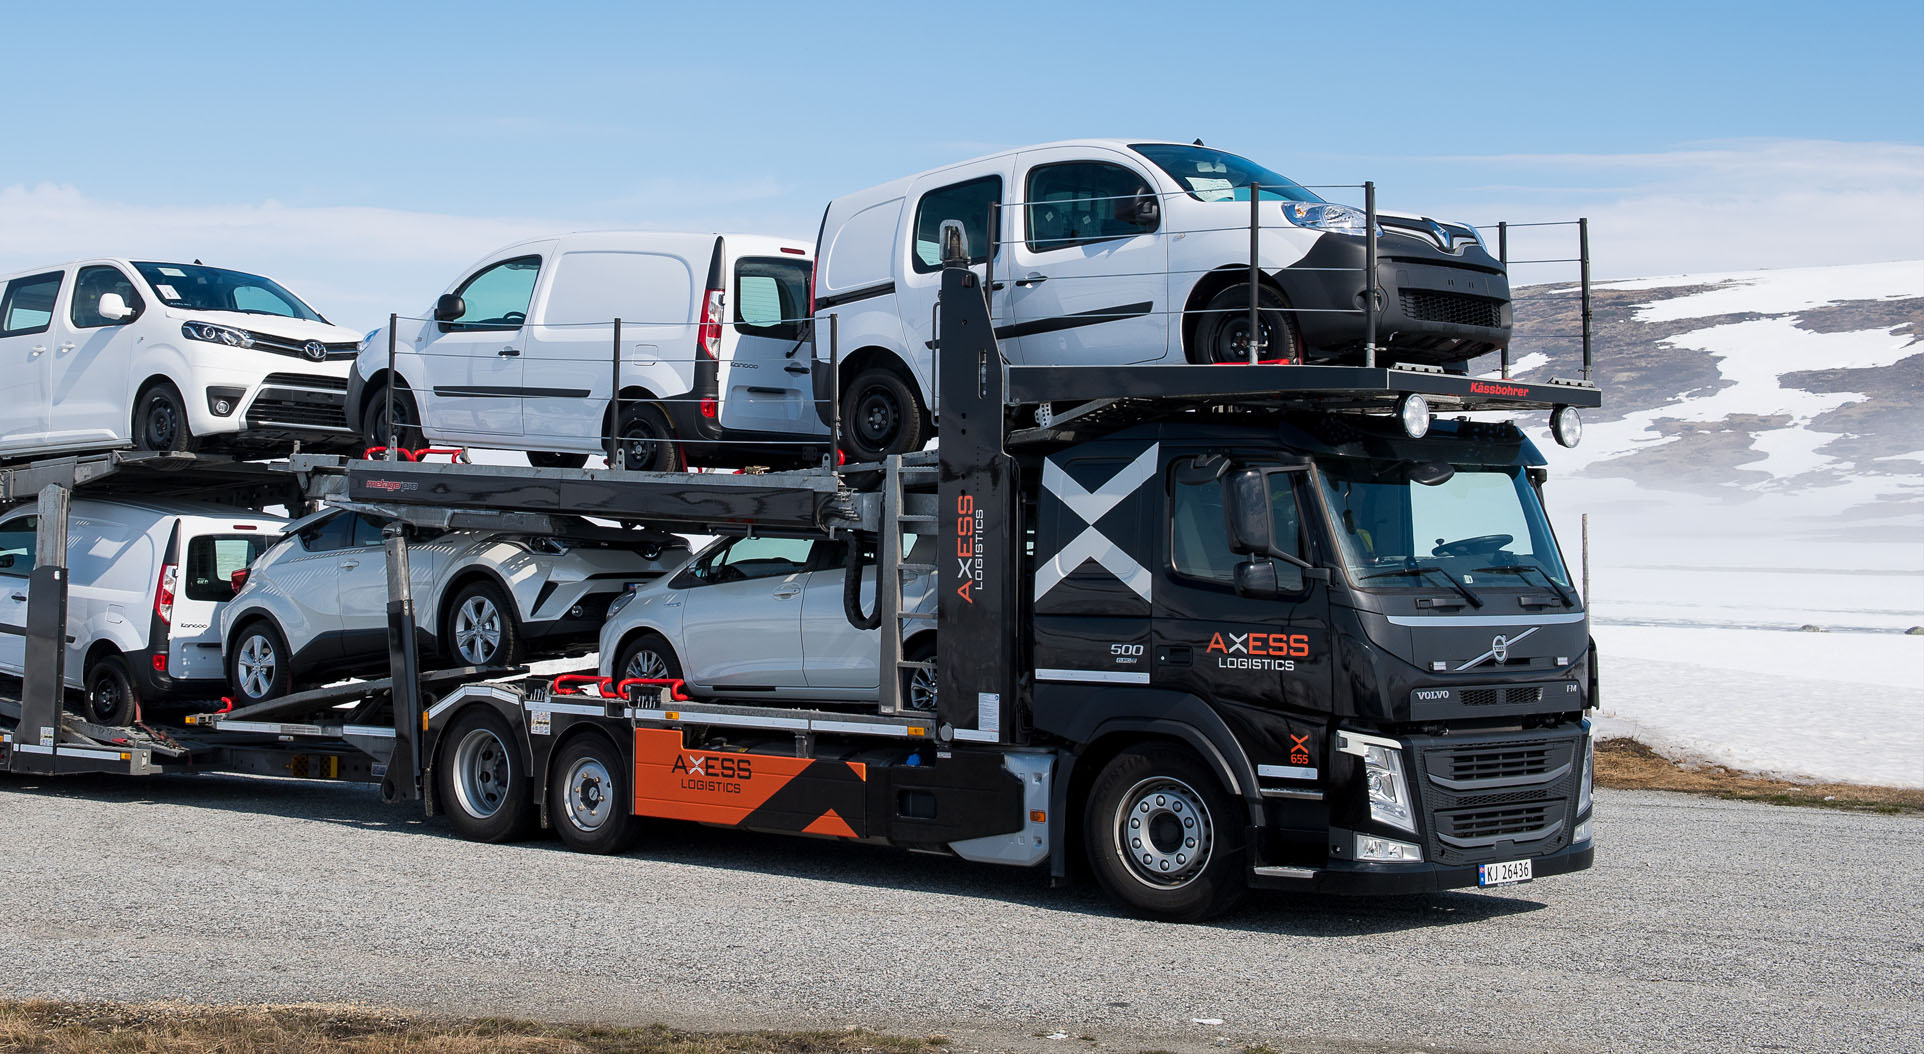 Iver utökar leveransen till Axess Logistics efter ny avtalsförlängning